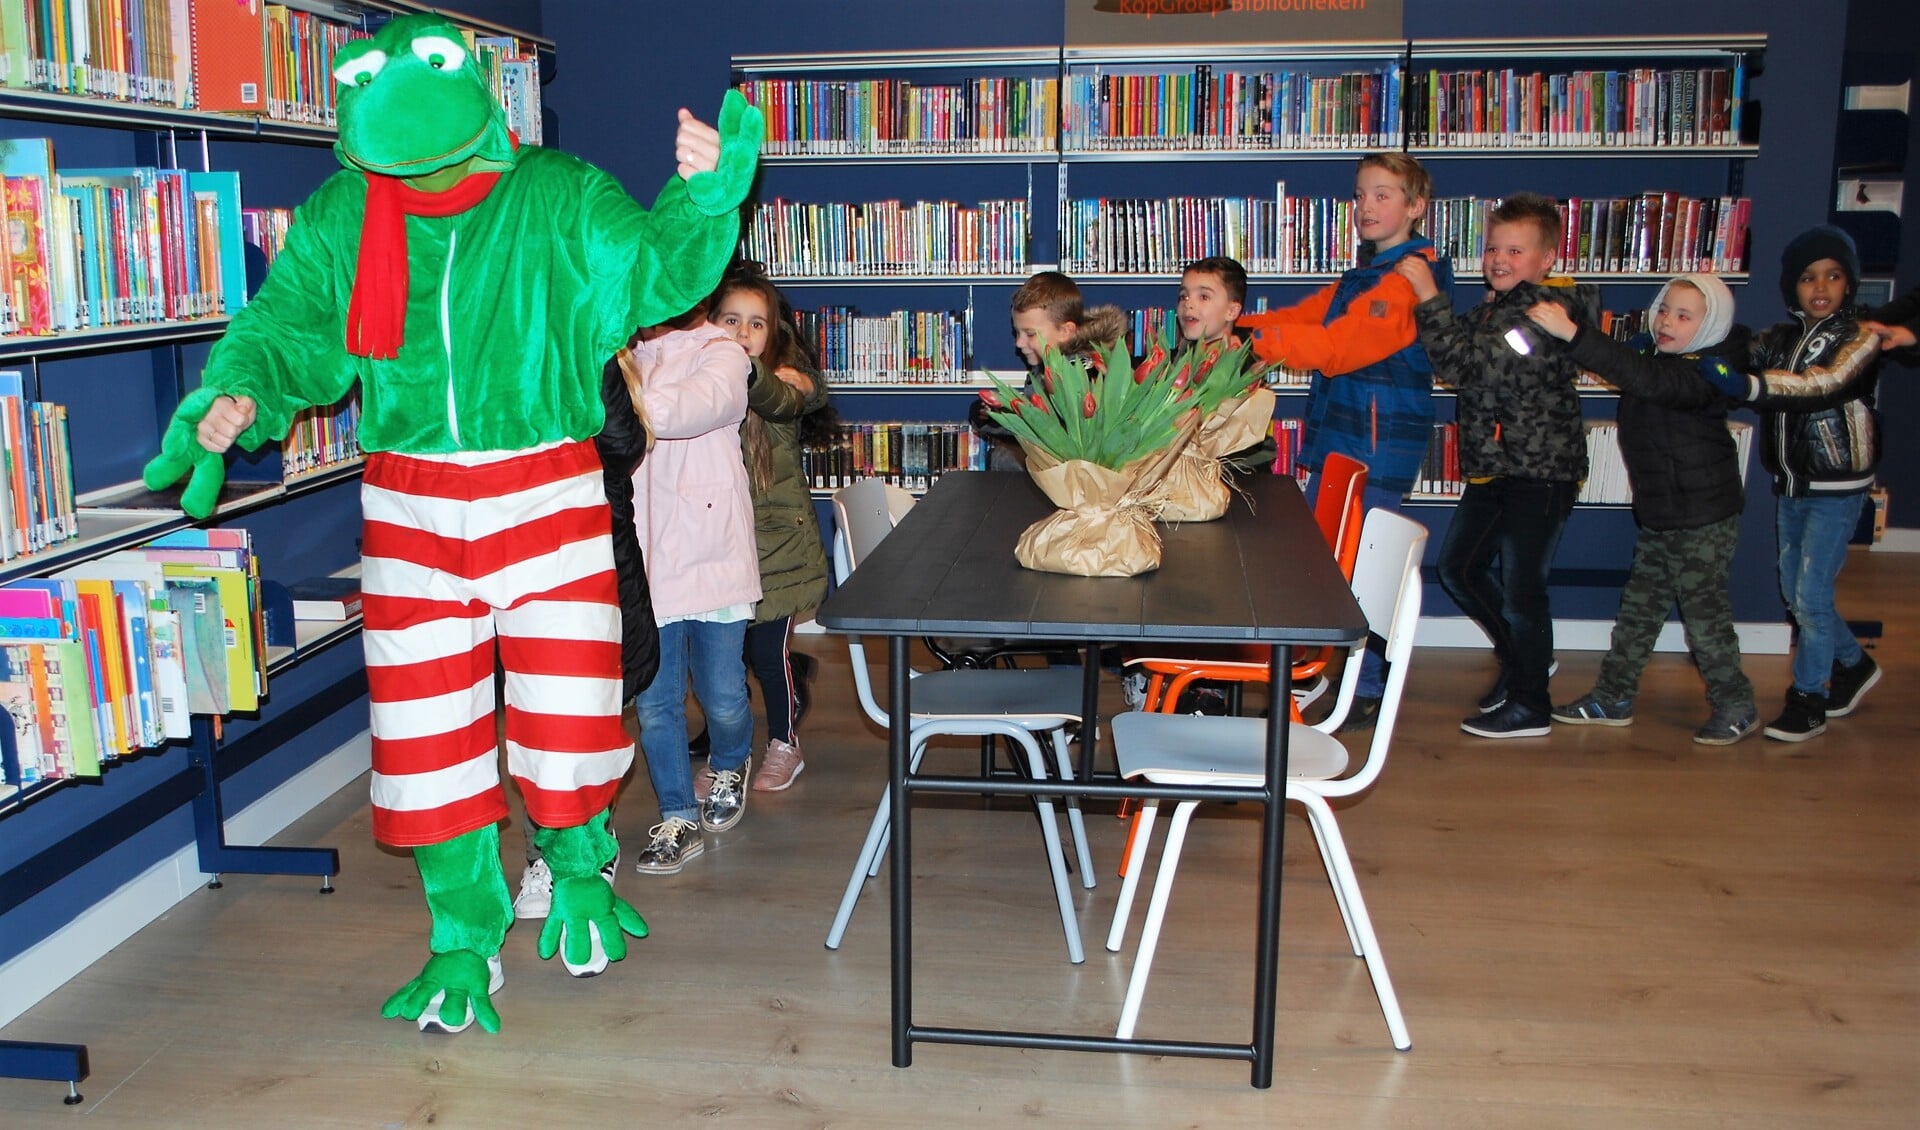 Tijdens opening opende het boekenfiguurtje Kikker de bieb samen met kinderen van de drie basisscholen uit de Schooten.